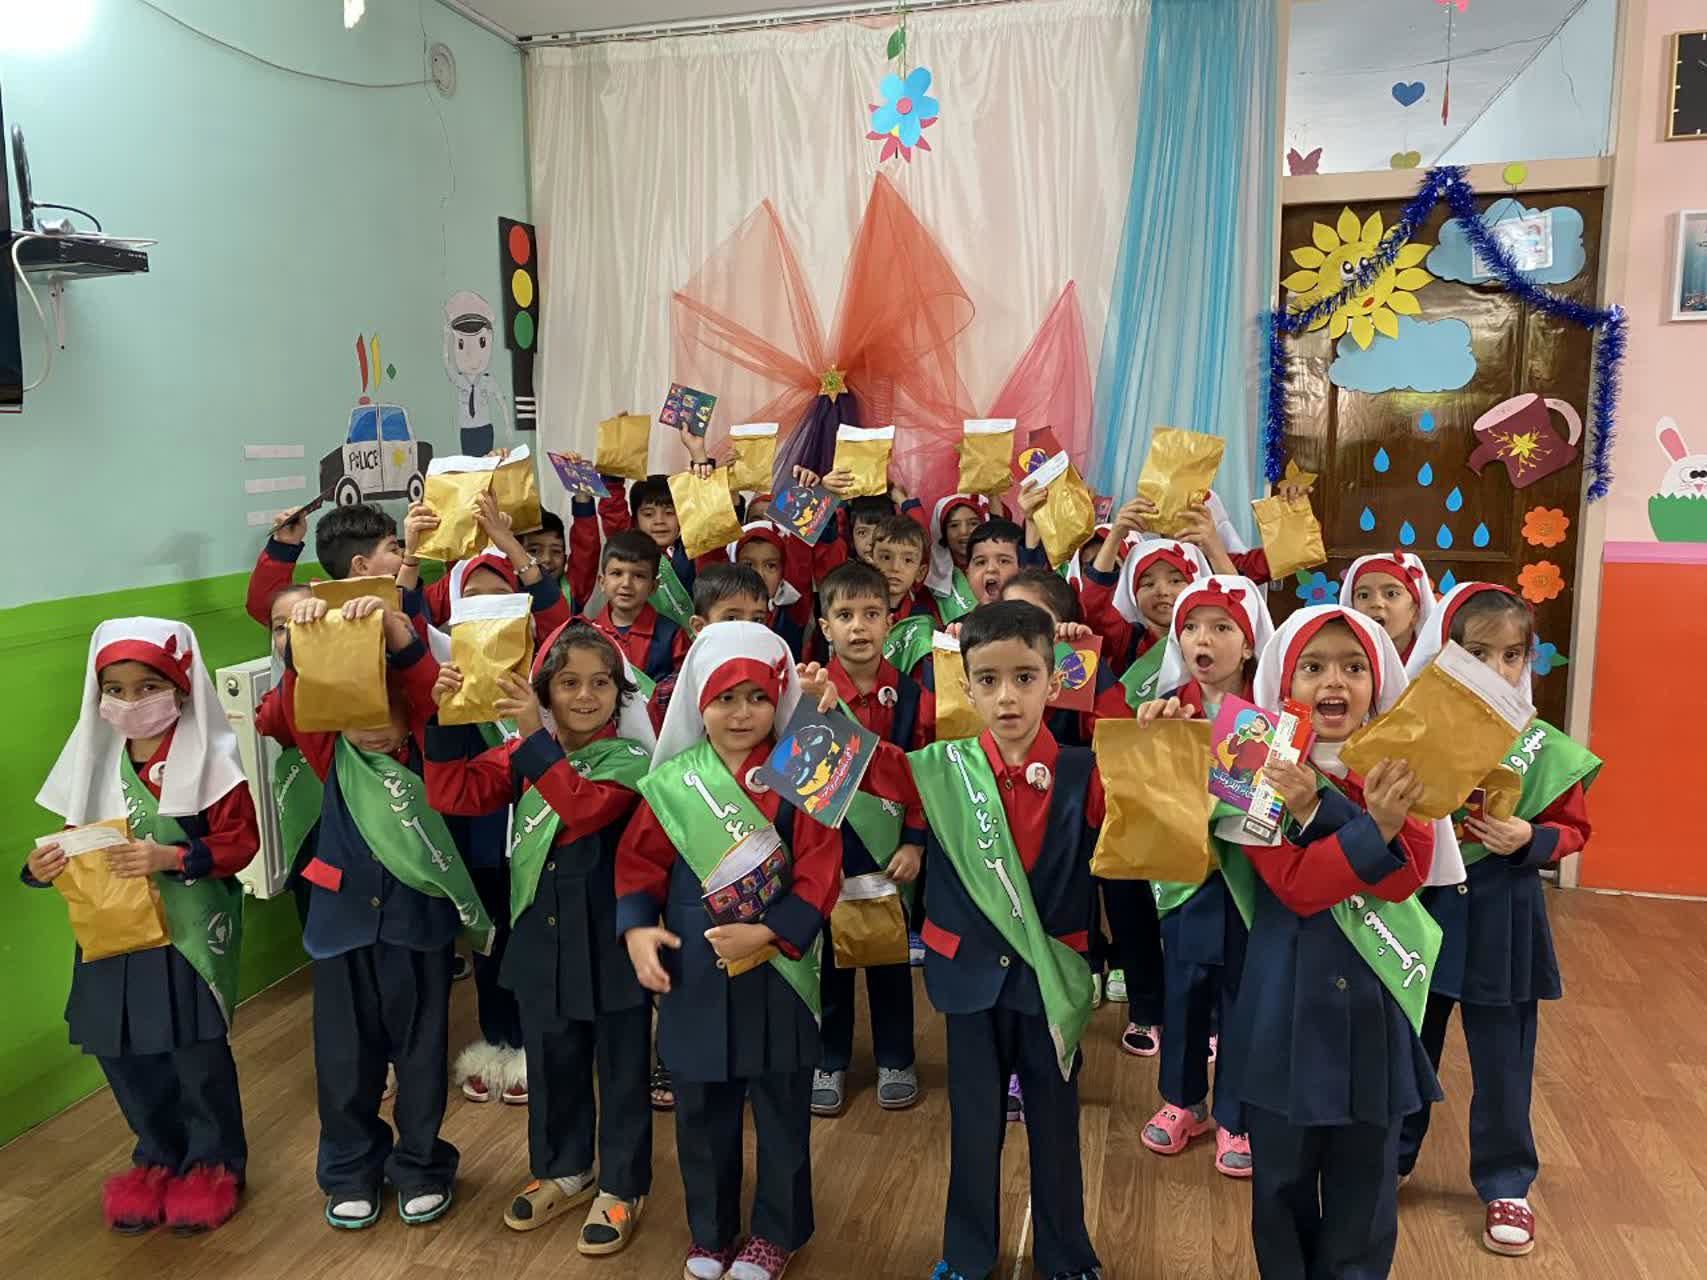 برگزاری 25 برنامه آموزشی با 3 هزار و 300 مخاطب در شهر اصفهان